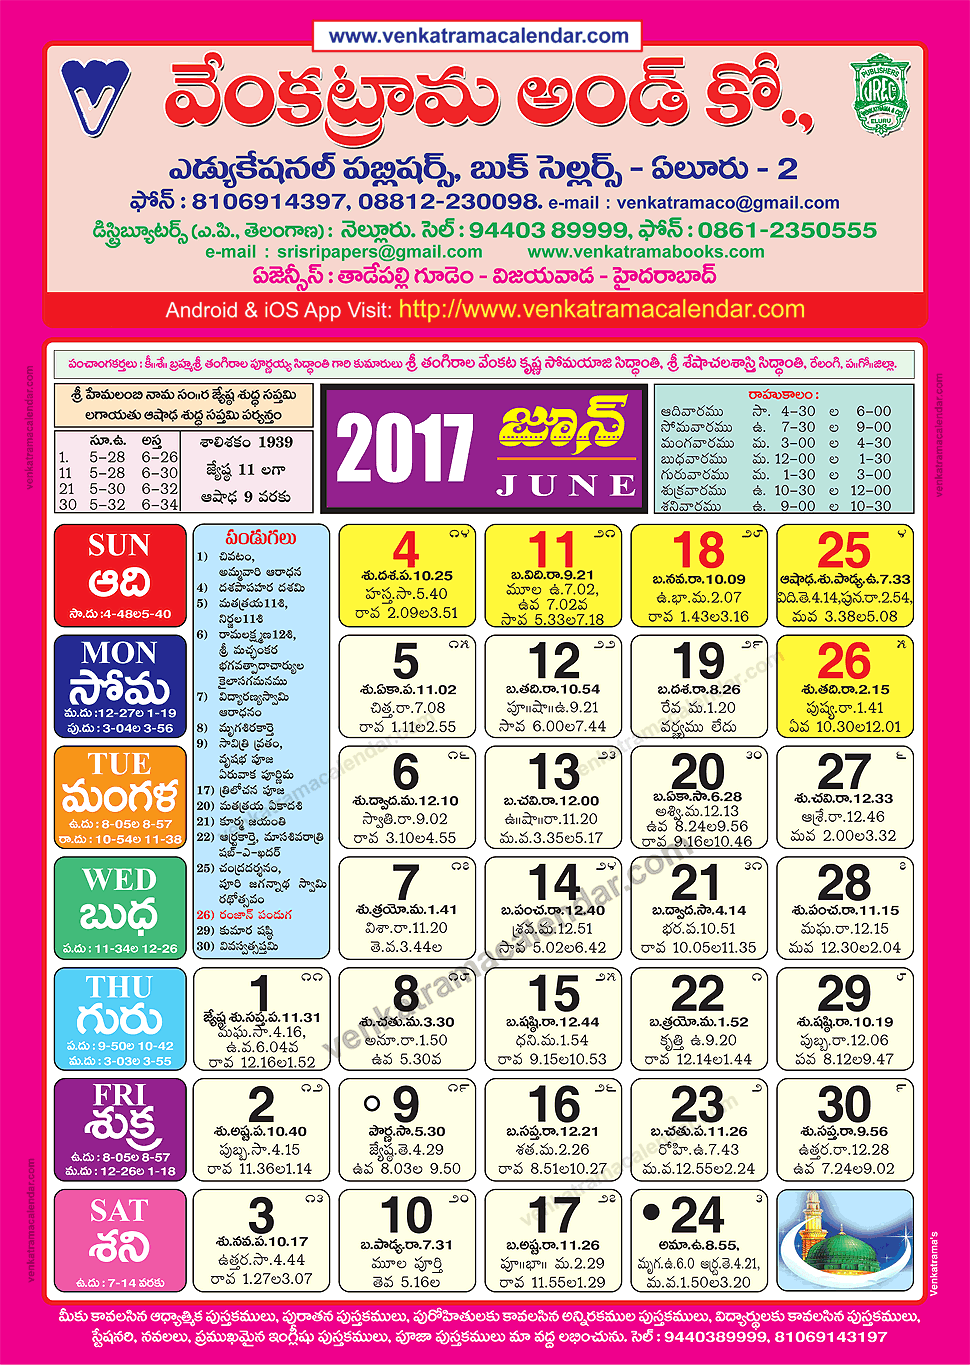 june-2017-venkatrama-co-colour-telugu-calendar-2017-festivals-holidays